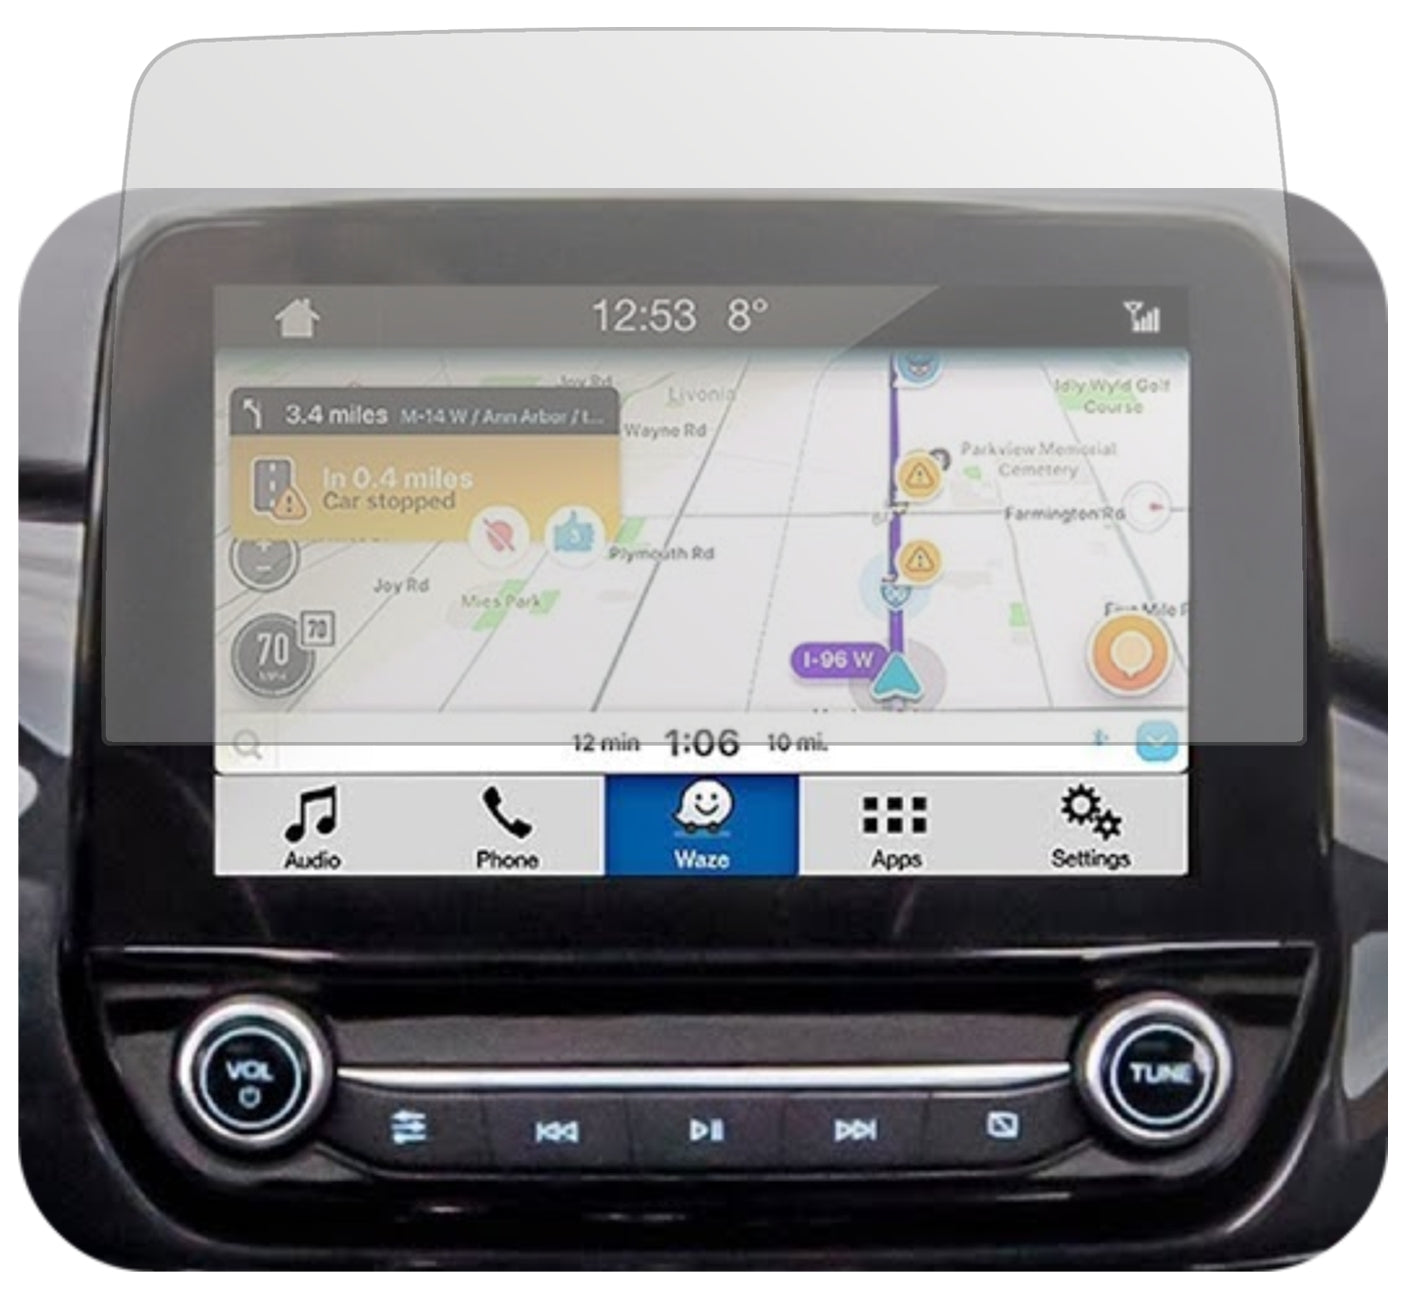 Display-Schutzfolie passend für Ford Kuga Touchscreen Display